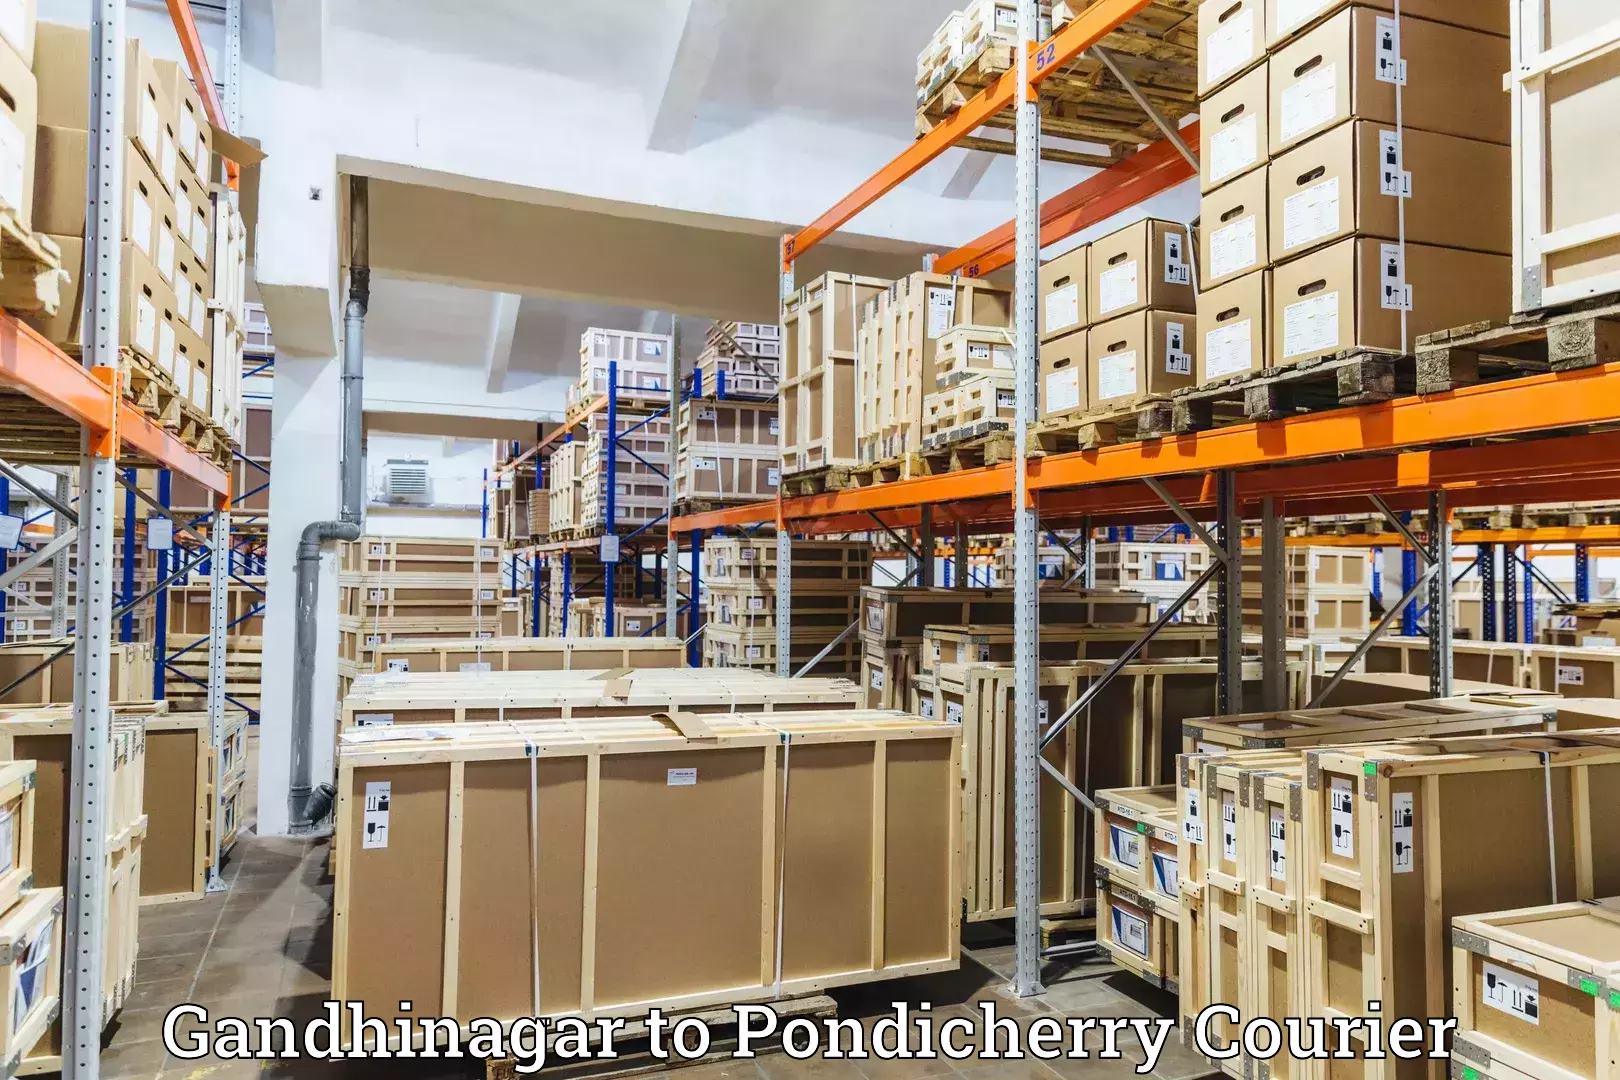 Dynamic parcel delivery in Gandhinagar to Pondicherry